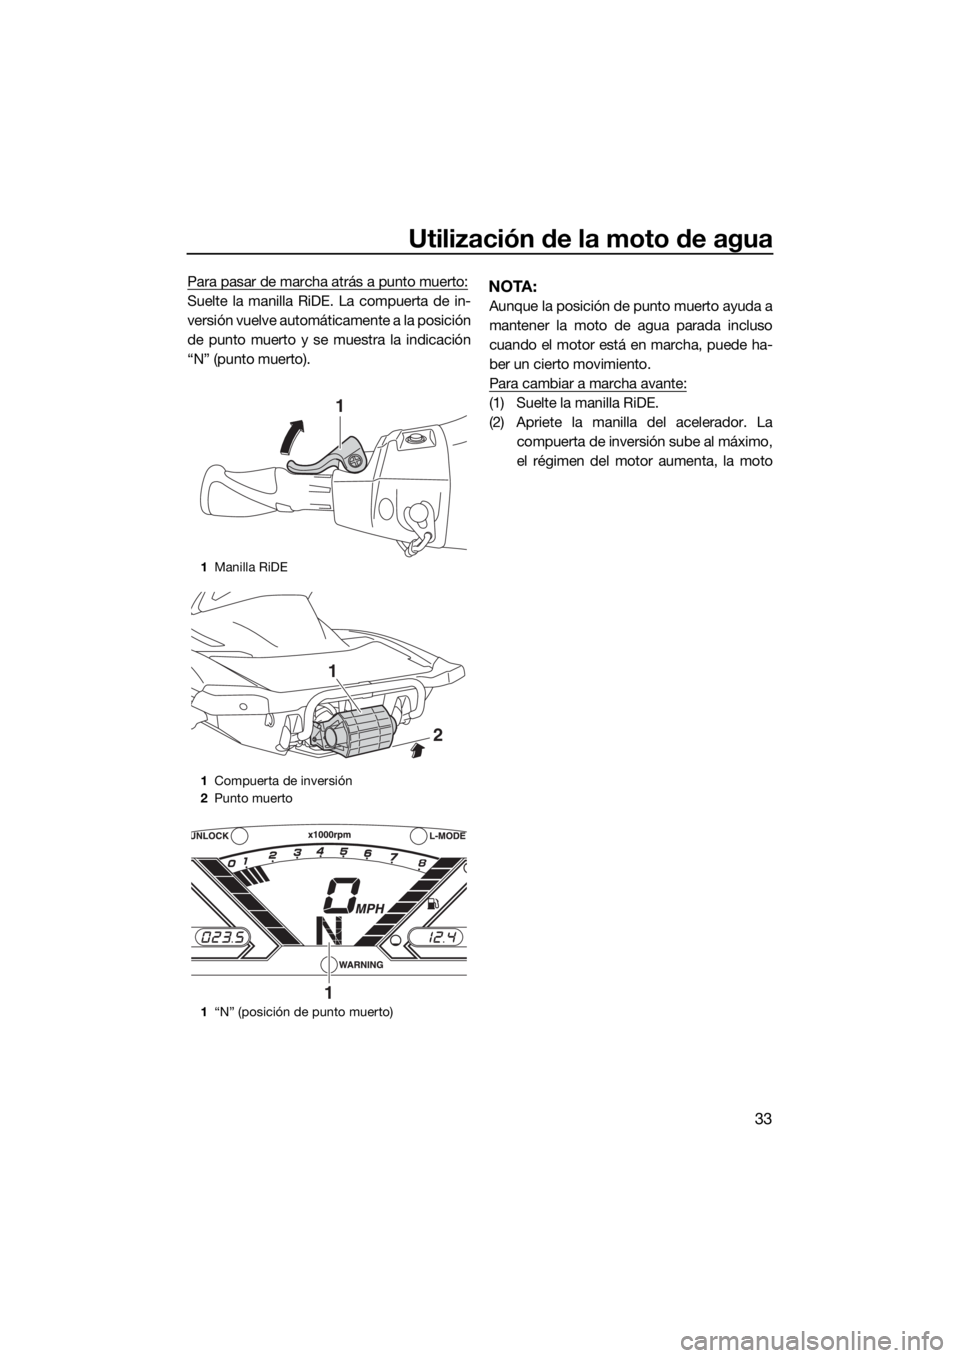 YAMAHA VX 2019  Manuale de Empleo (in Spanish) Utilización de la moto de agua
33
Para pasar de marcha atrás a punto muerto:
Suelte la manilla RiDE. La compuerta de in-
versión vuelve automáticamente a la posición
de punto muerto y se muestra 